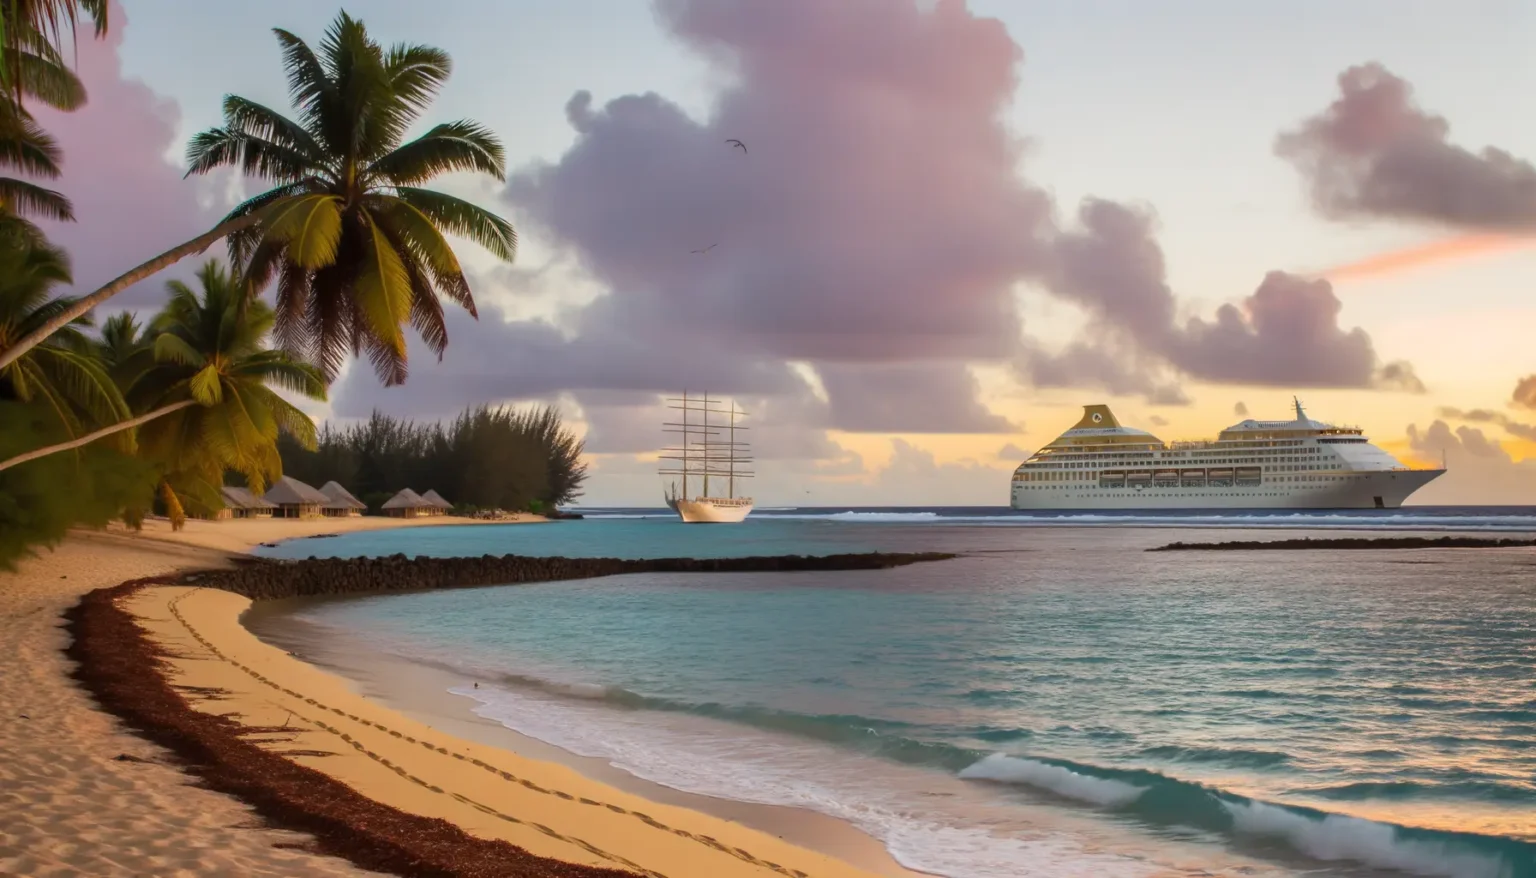 Eine idyllische tropische Strandansicht bei Sonnenuntergang mit Palmen, einem Segelschiff und einem großen Kreuzfahrtschiff auf ruhigem Meer, begleitet von einem rosa getönten Himmel, der von ein paar Vögeln durchkreuzt wird.